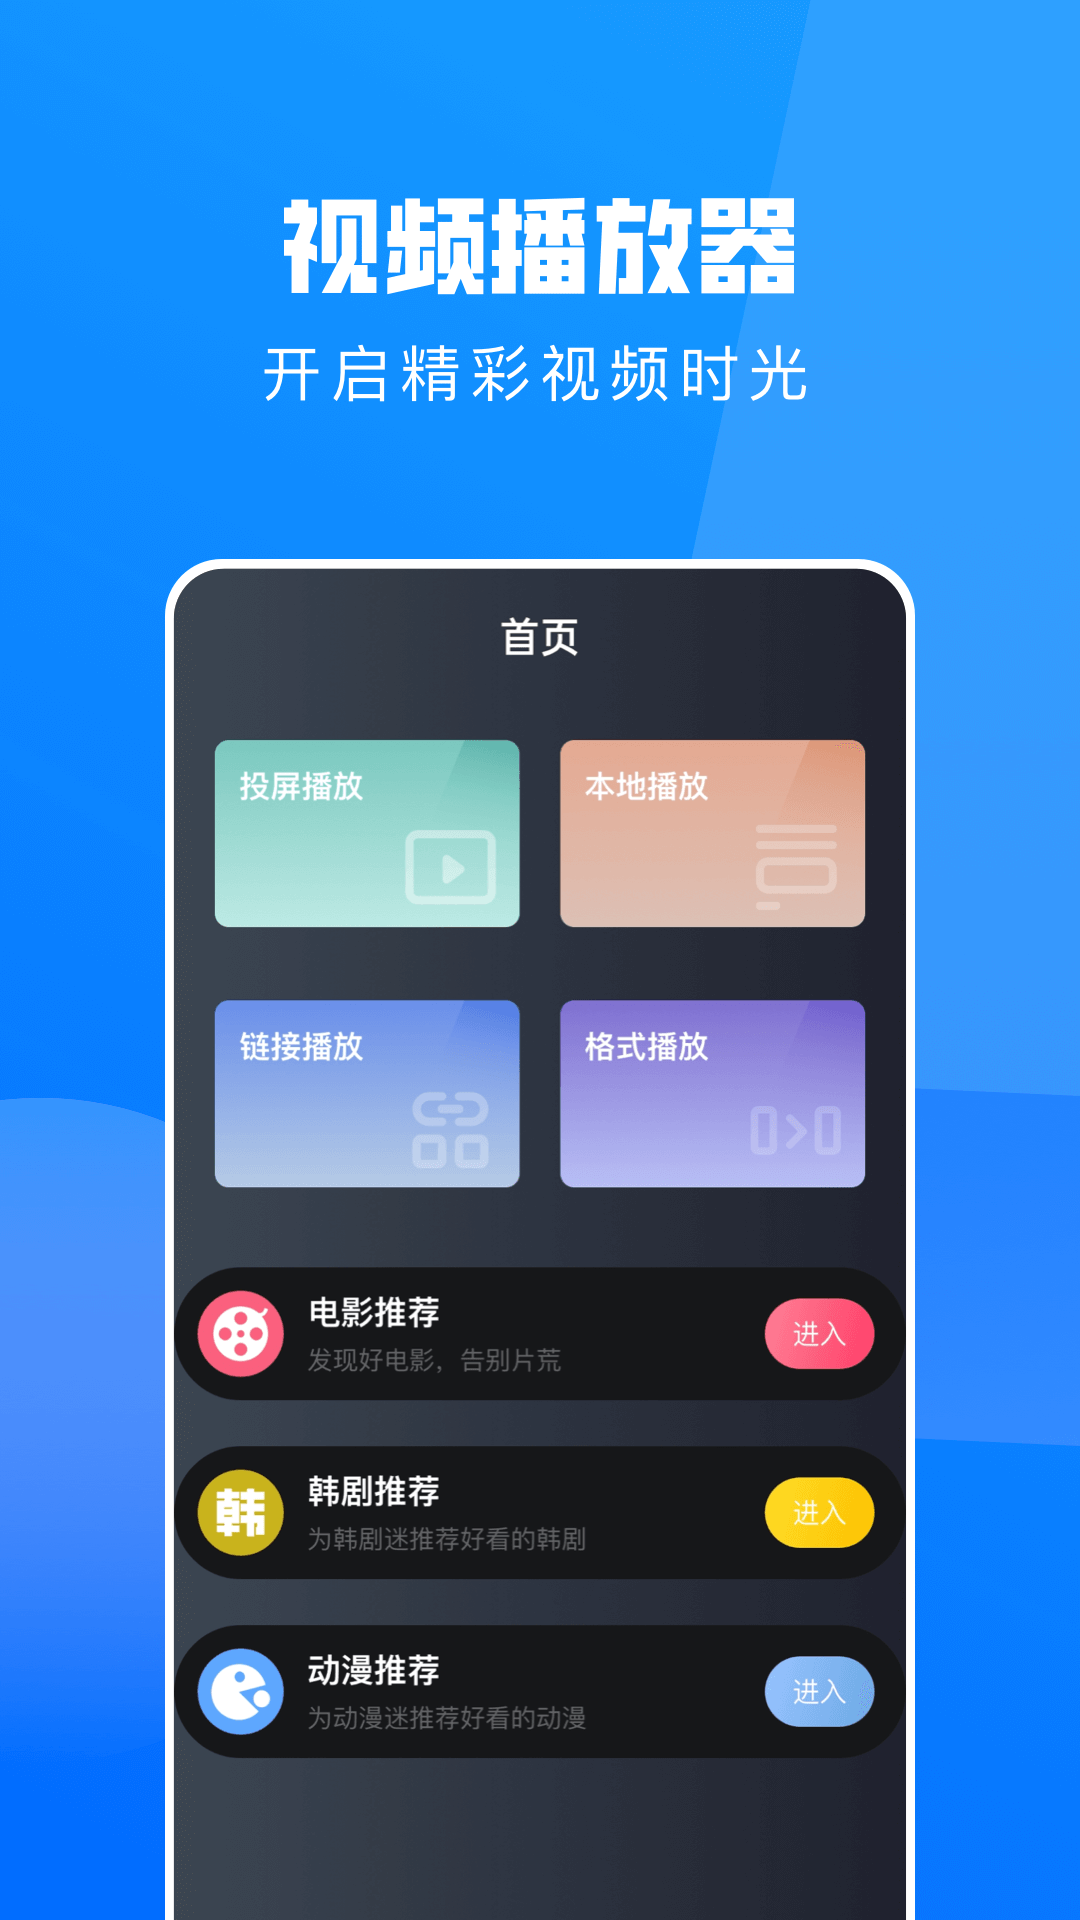 不用钱韩剧app下载分享 能够看韩剧的软件有哪几款